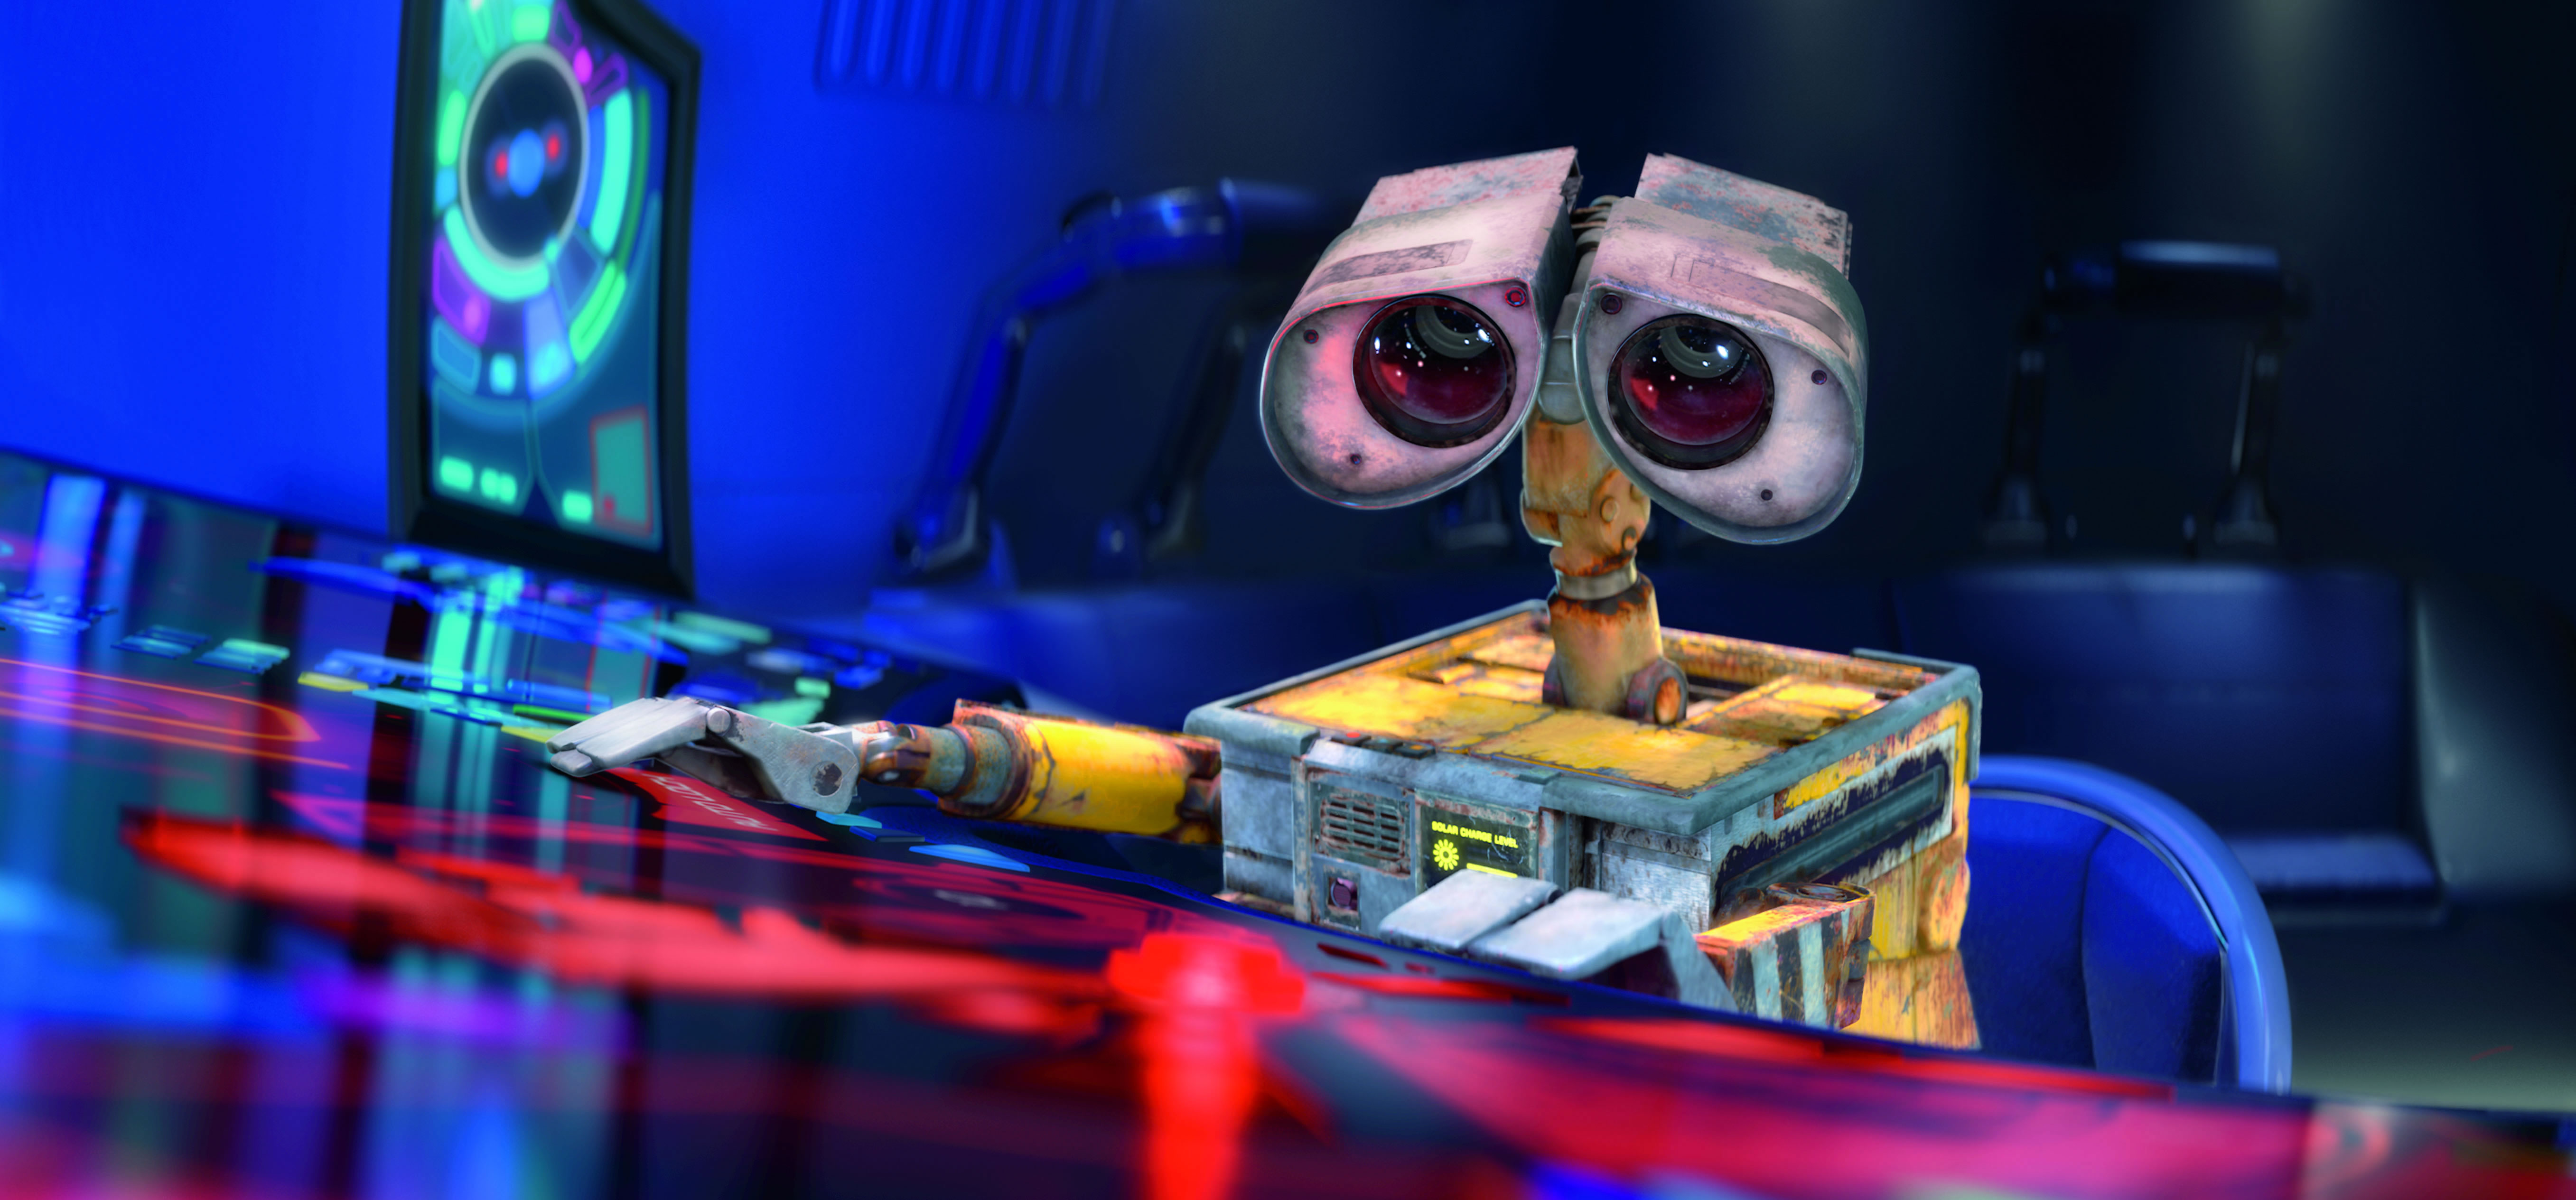 Wall E Character Pixar Robot 5428x2529